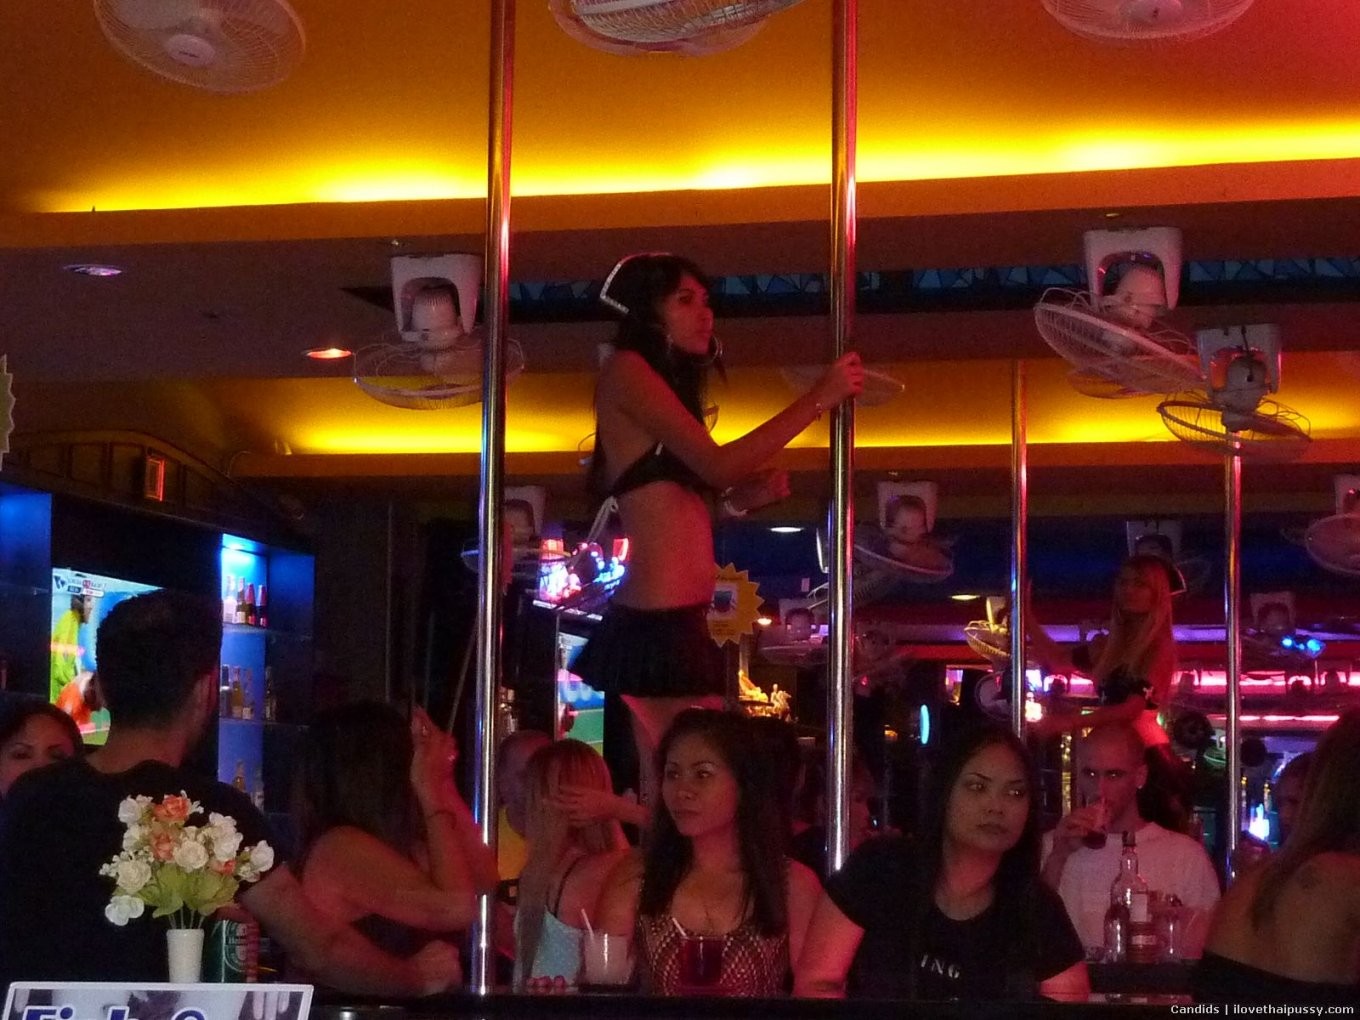 Putas tailandesas borrachas de fiesta con turistas sexuales y follando por dinero putas asiáticas
 #68152496